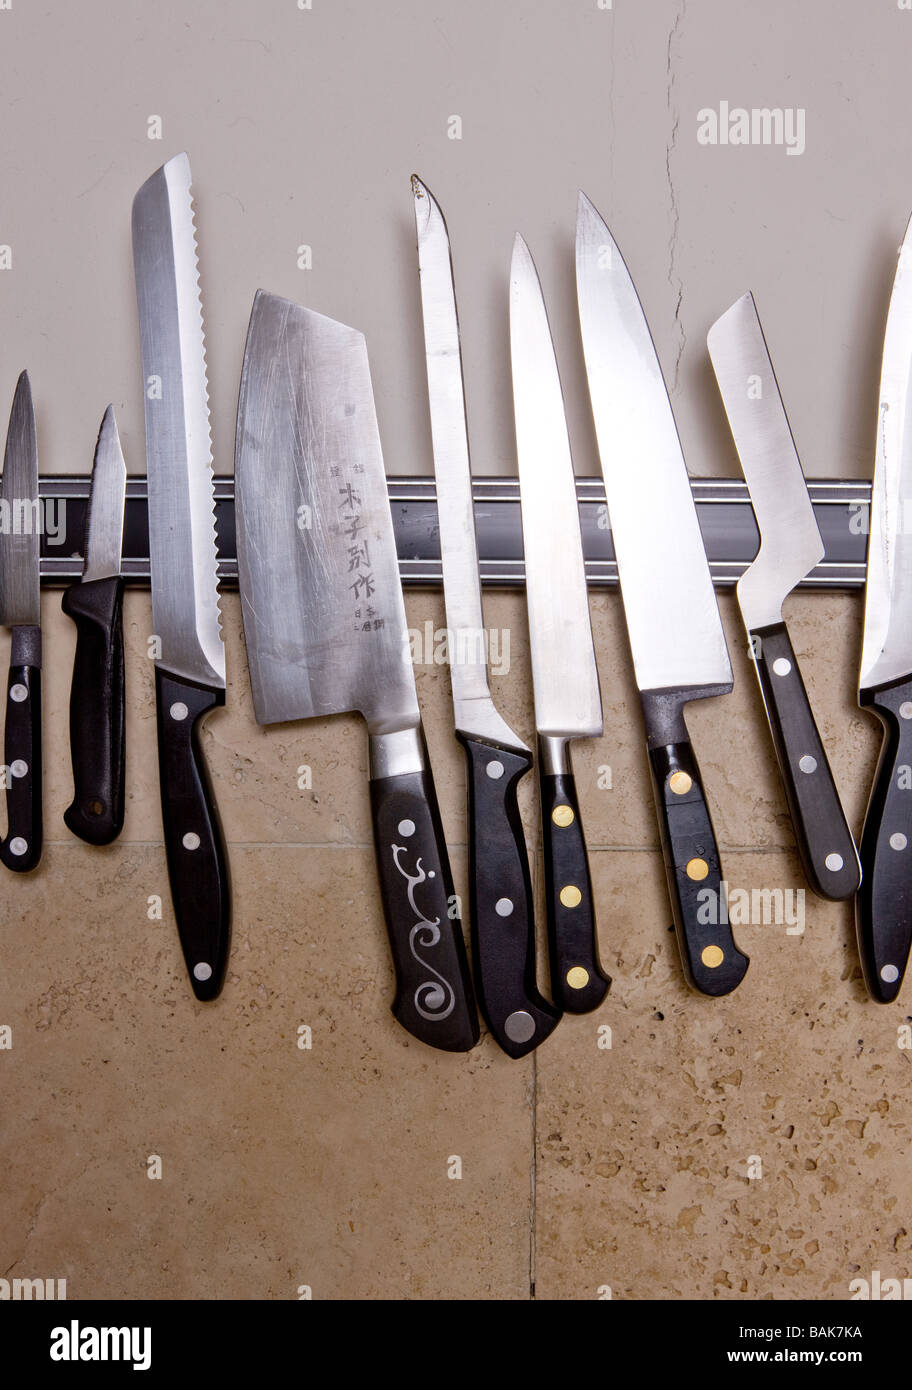 Un rack de cuchillas en una cocina Foto de stock